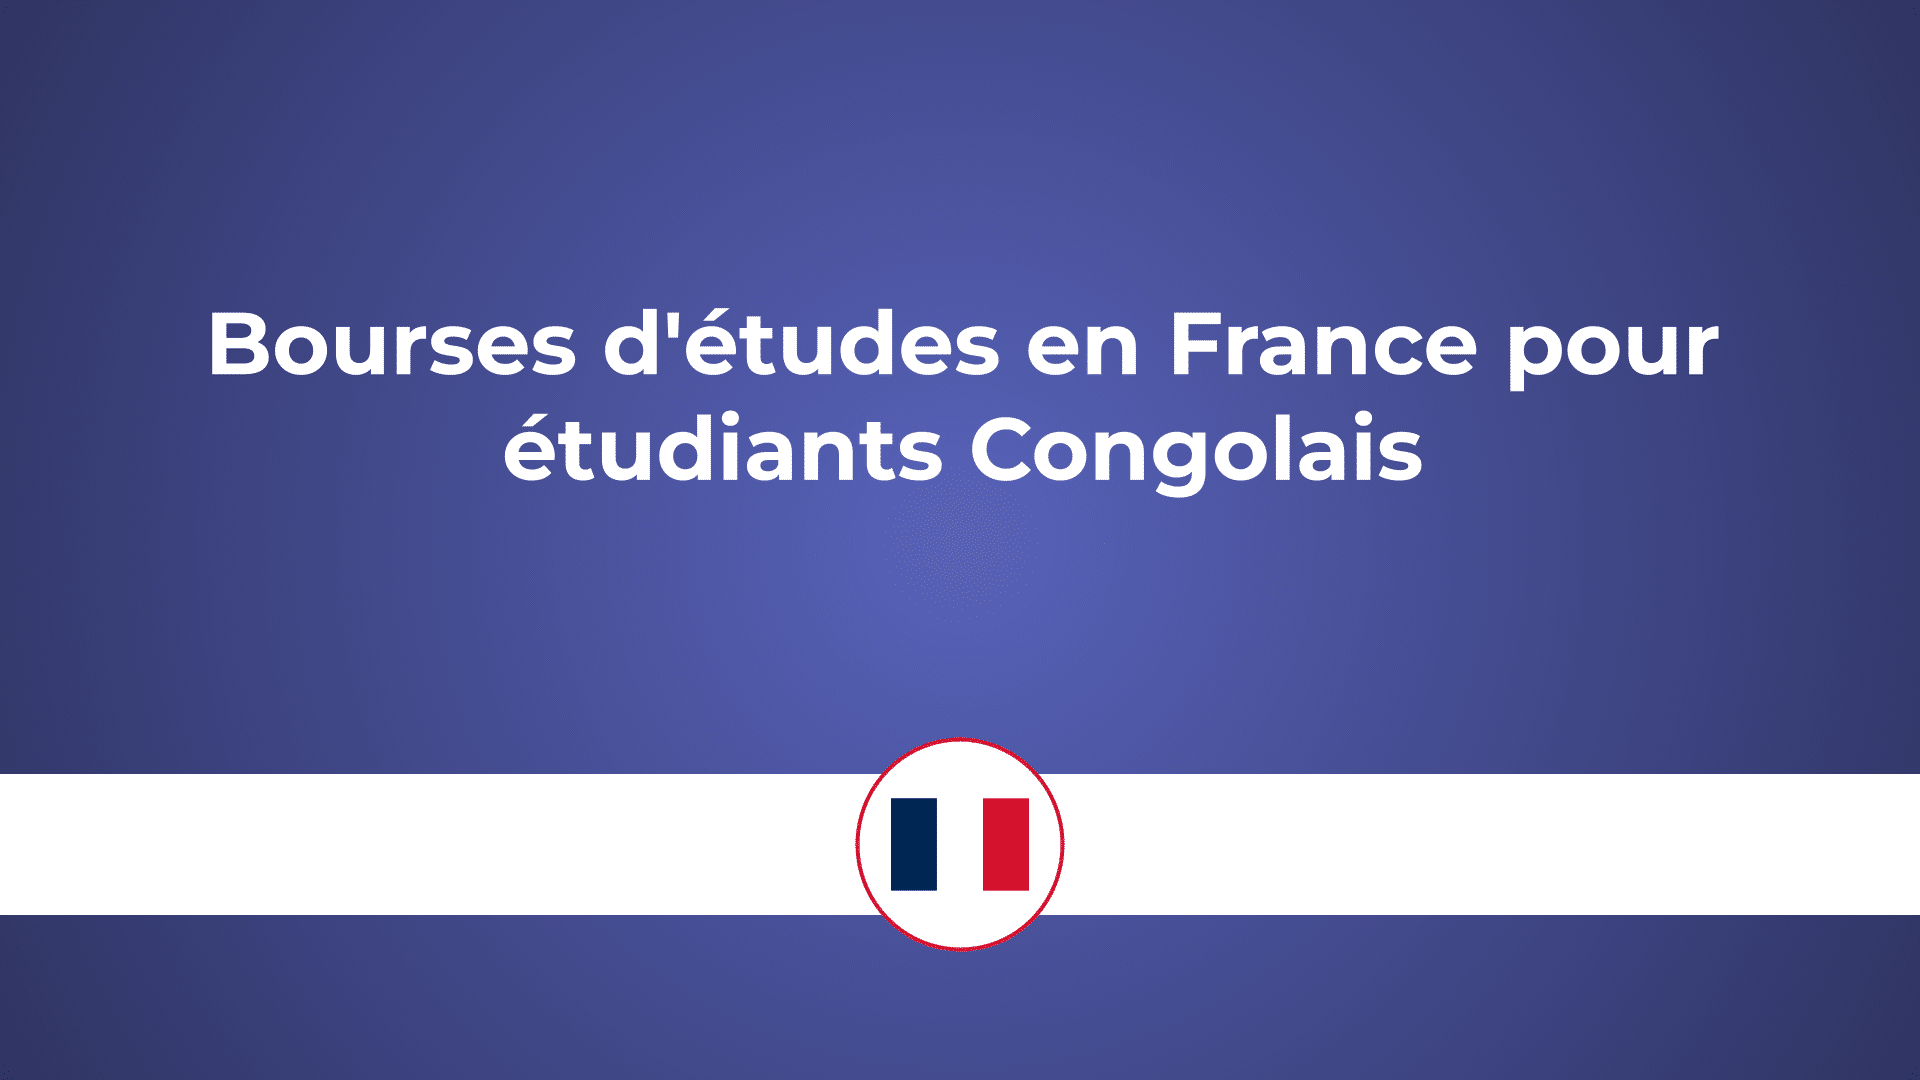 Bourses d'études en France pour étudiants Congolais